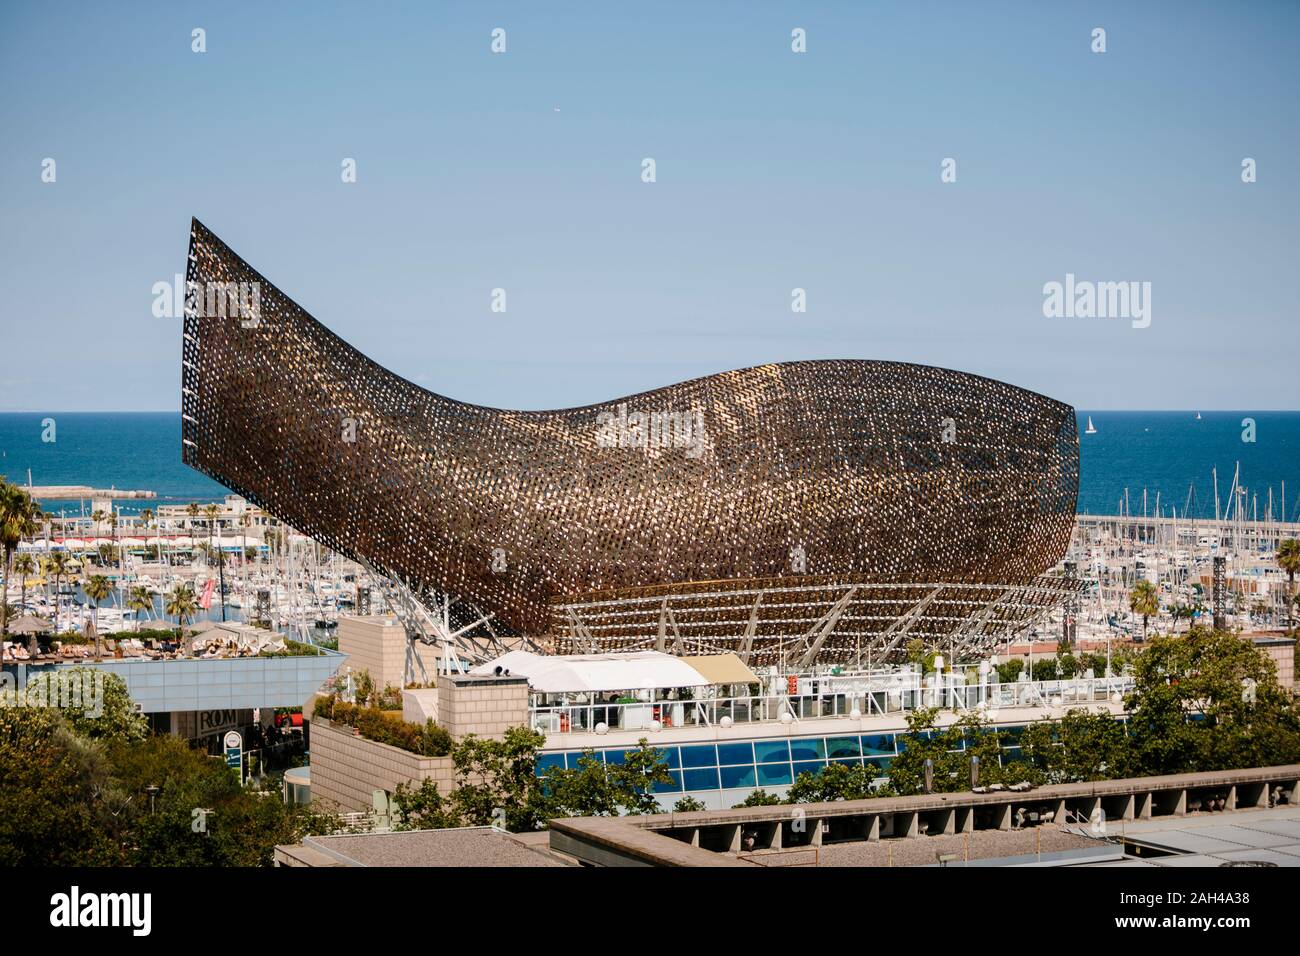 Sculpture de baleine par Frank Gehry dans le Port Olympique de Barcelone Banque D'Images